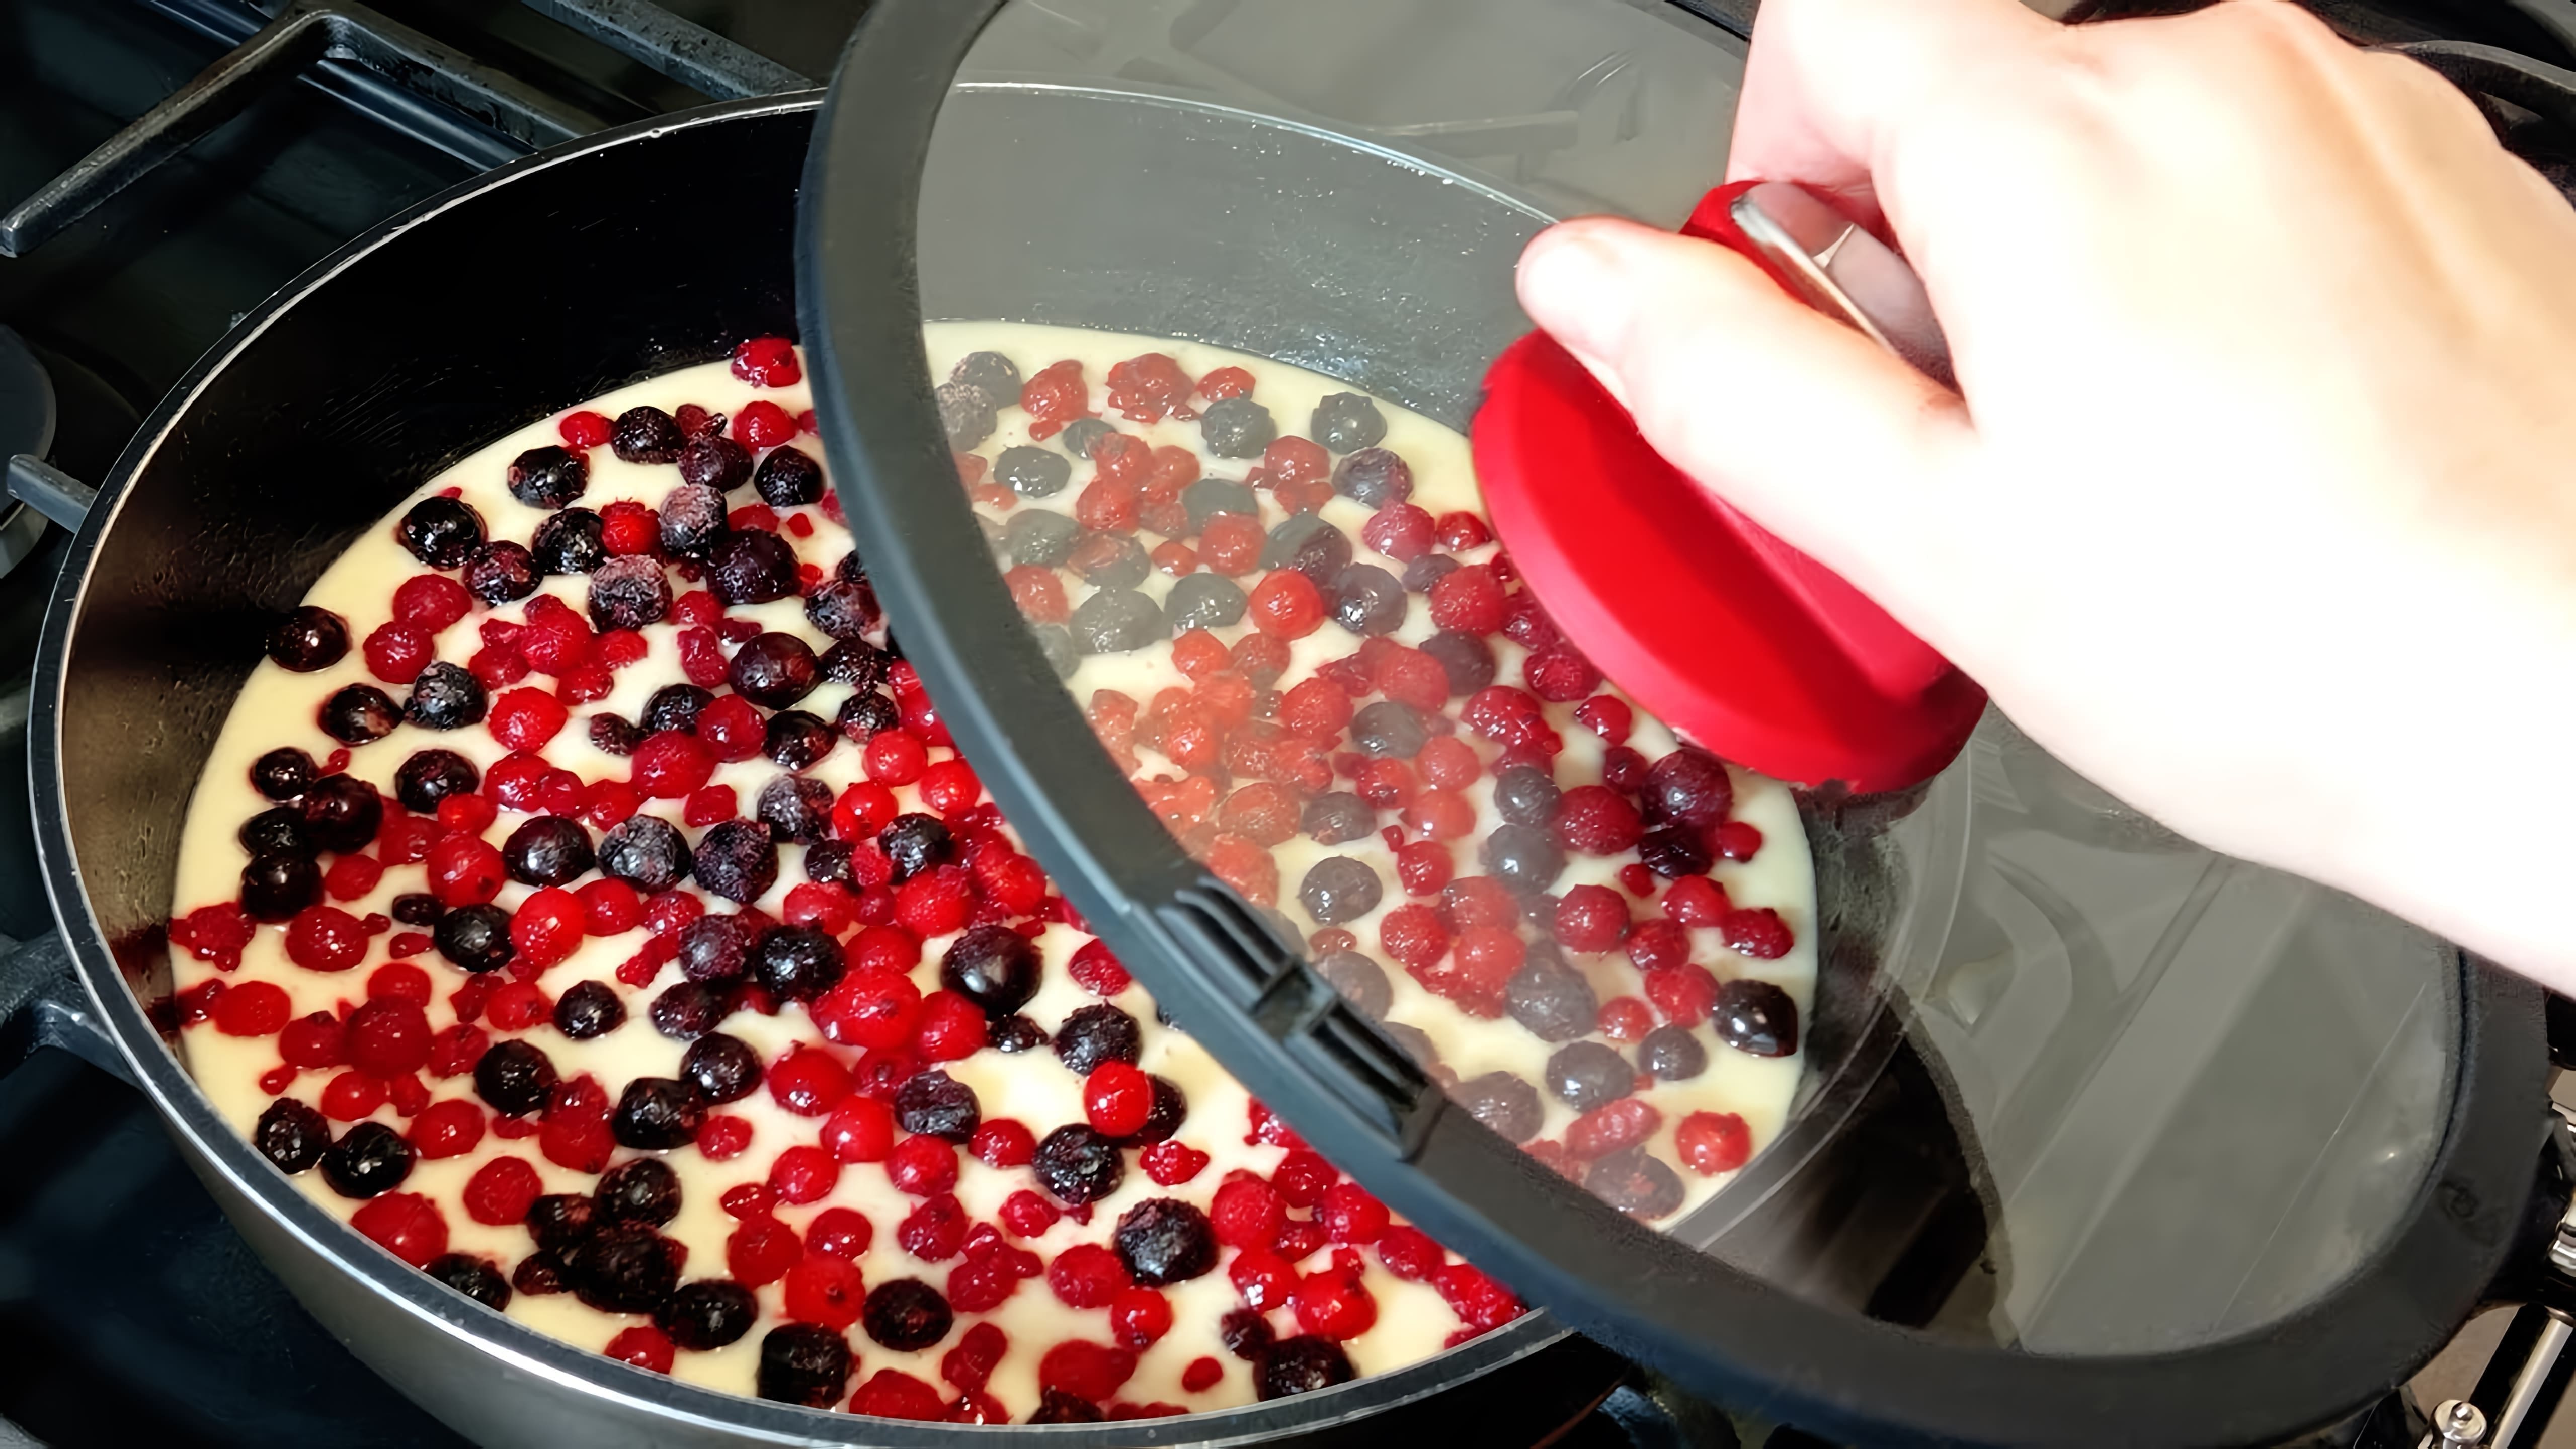 В этом видео демонстрируется рецепт приготовления ягодного пирога на сковороде